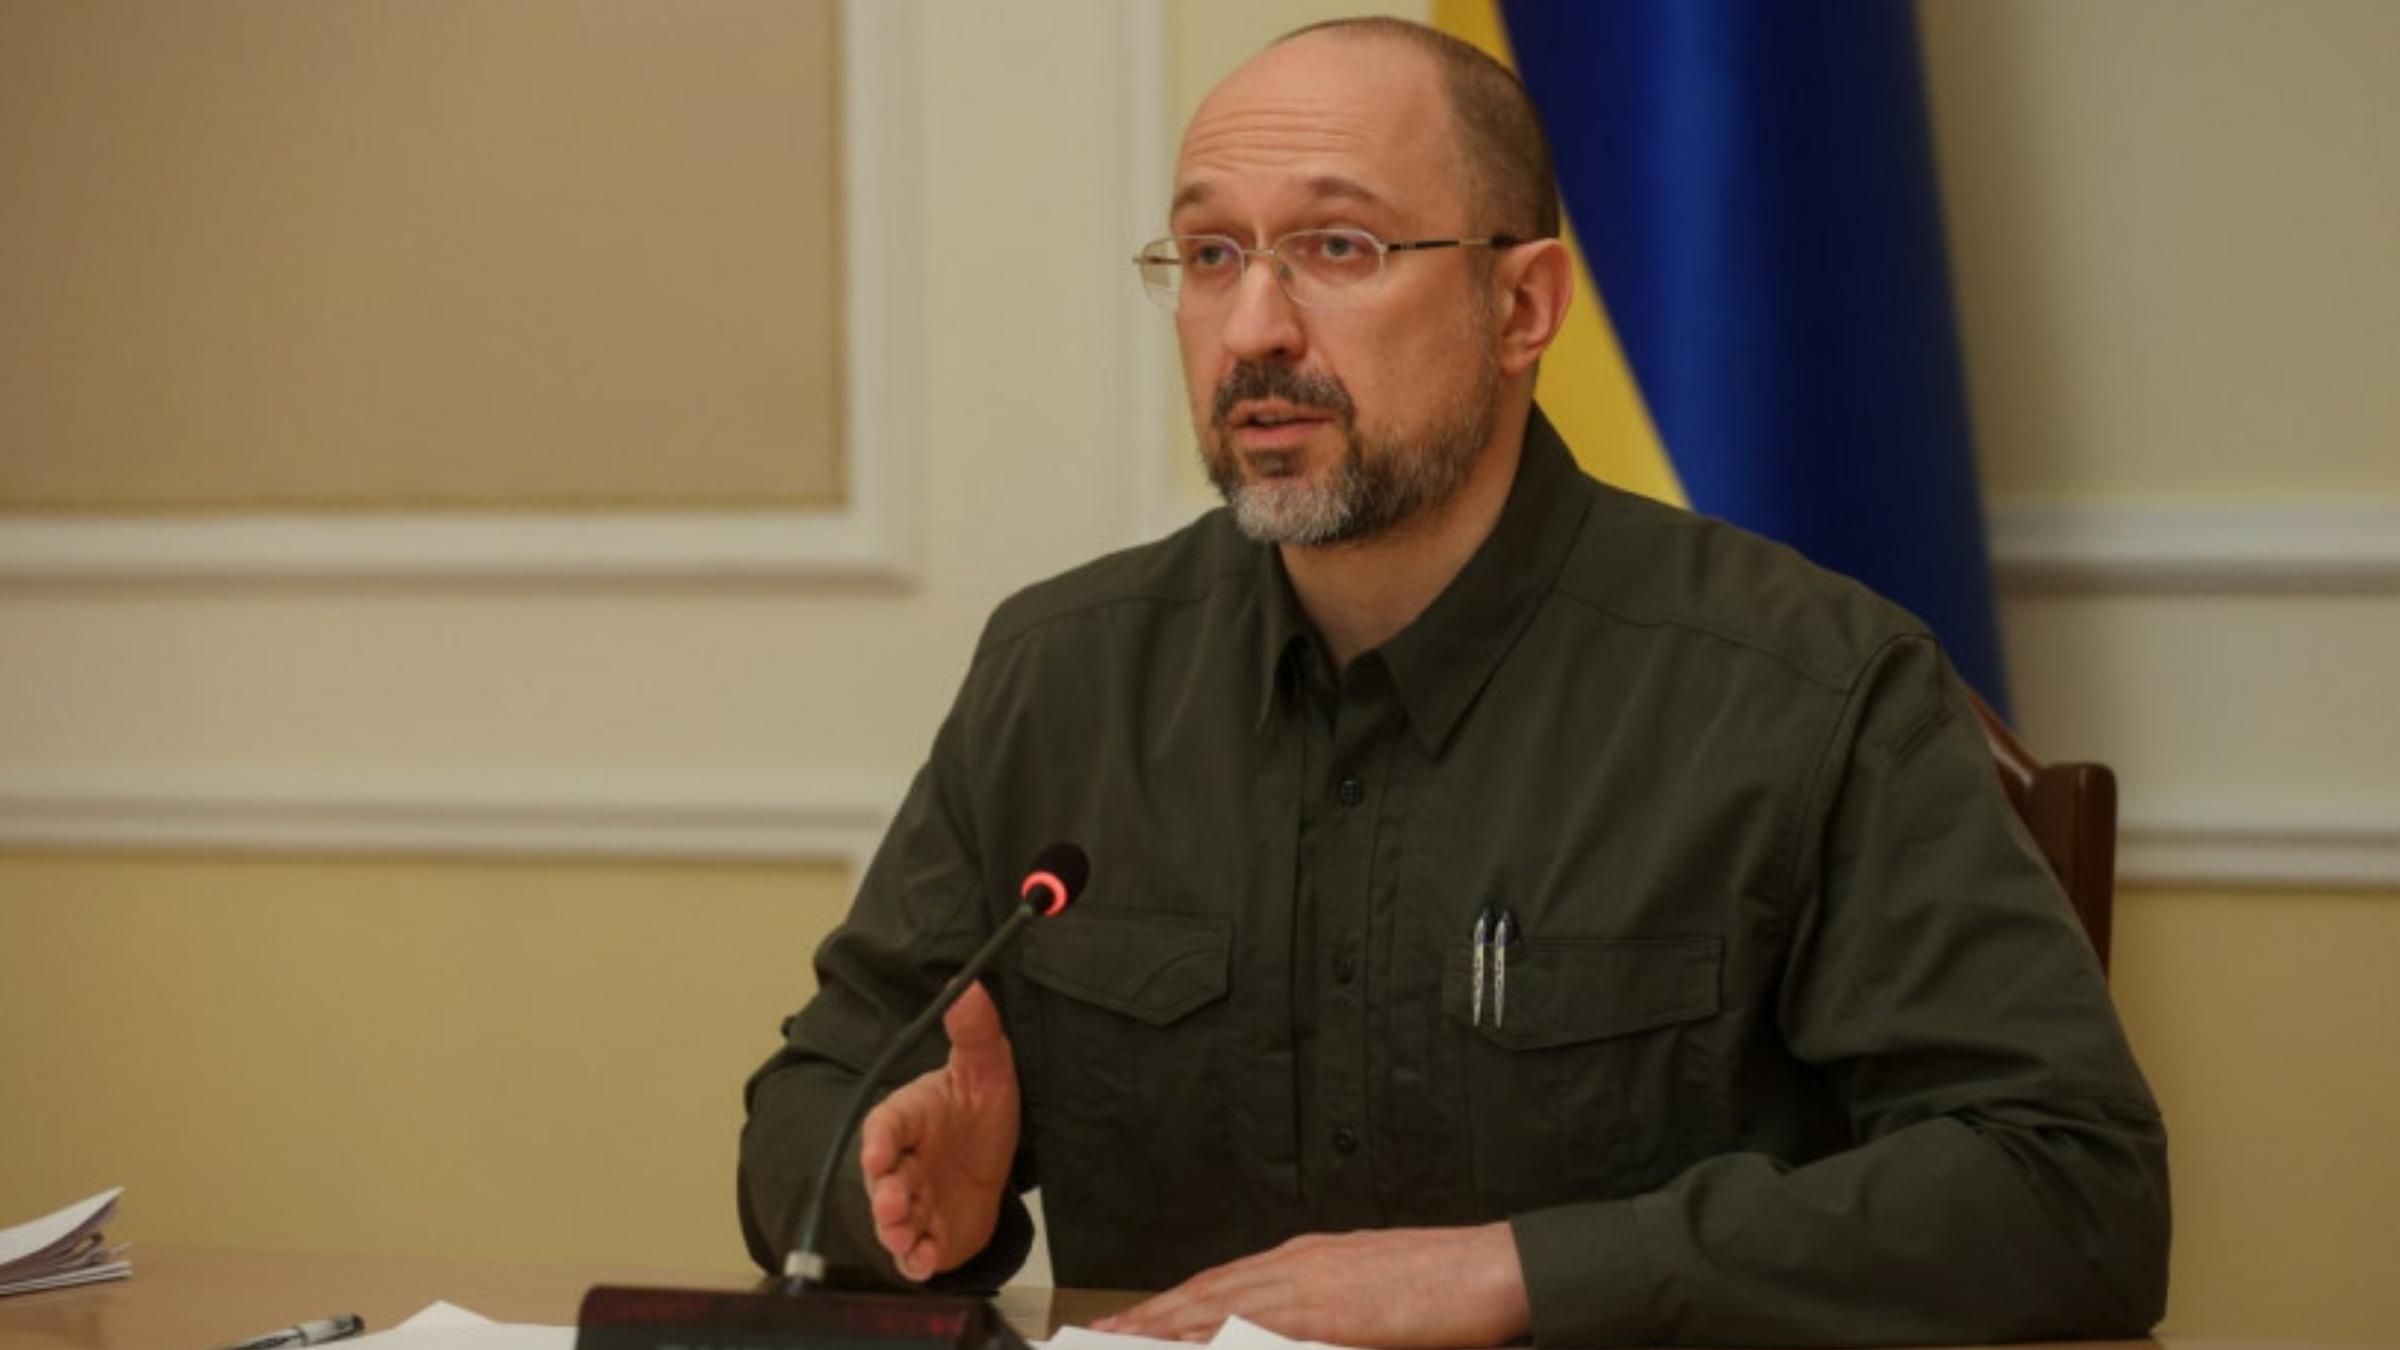 ЕС открыл для поставки горючего в Украину специальные коридоры, – Шмыгаль